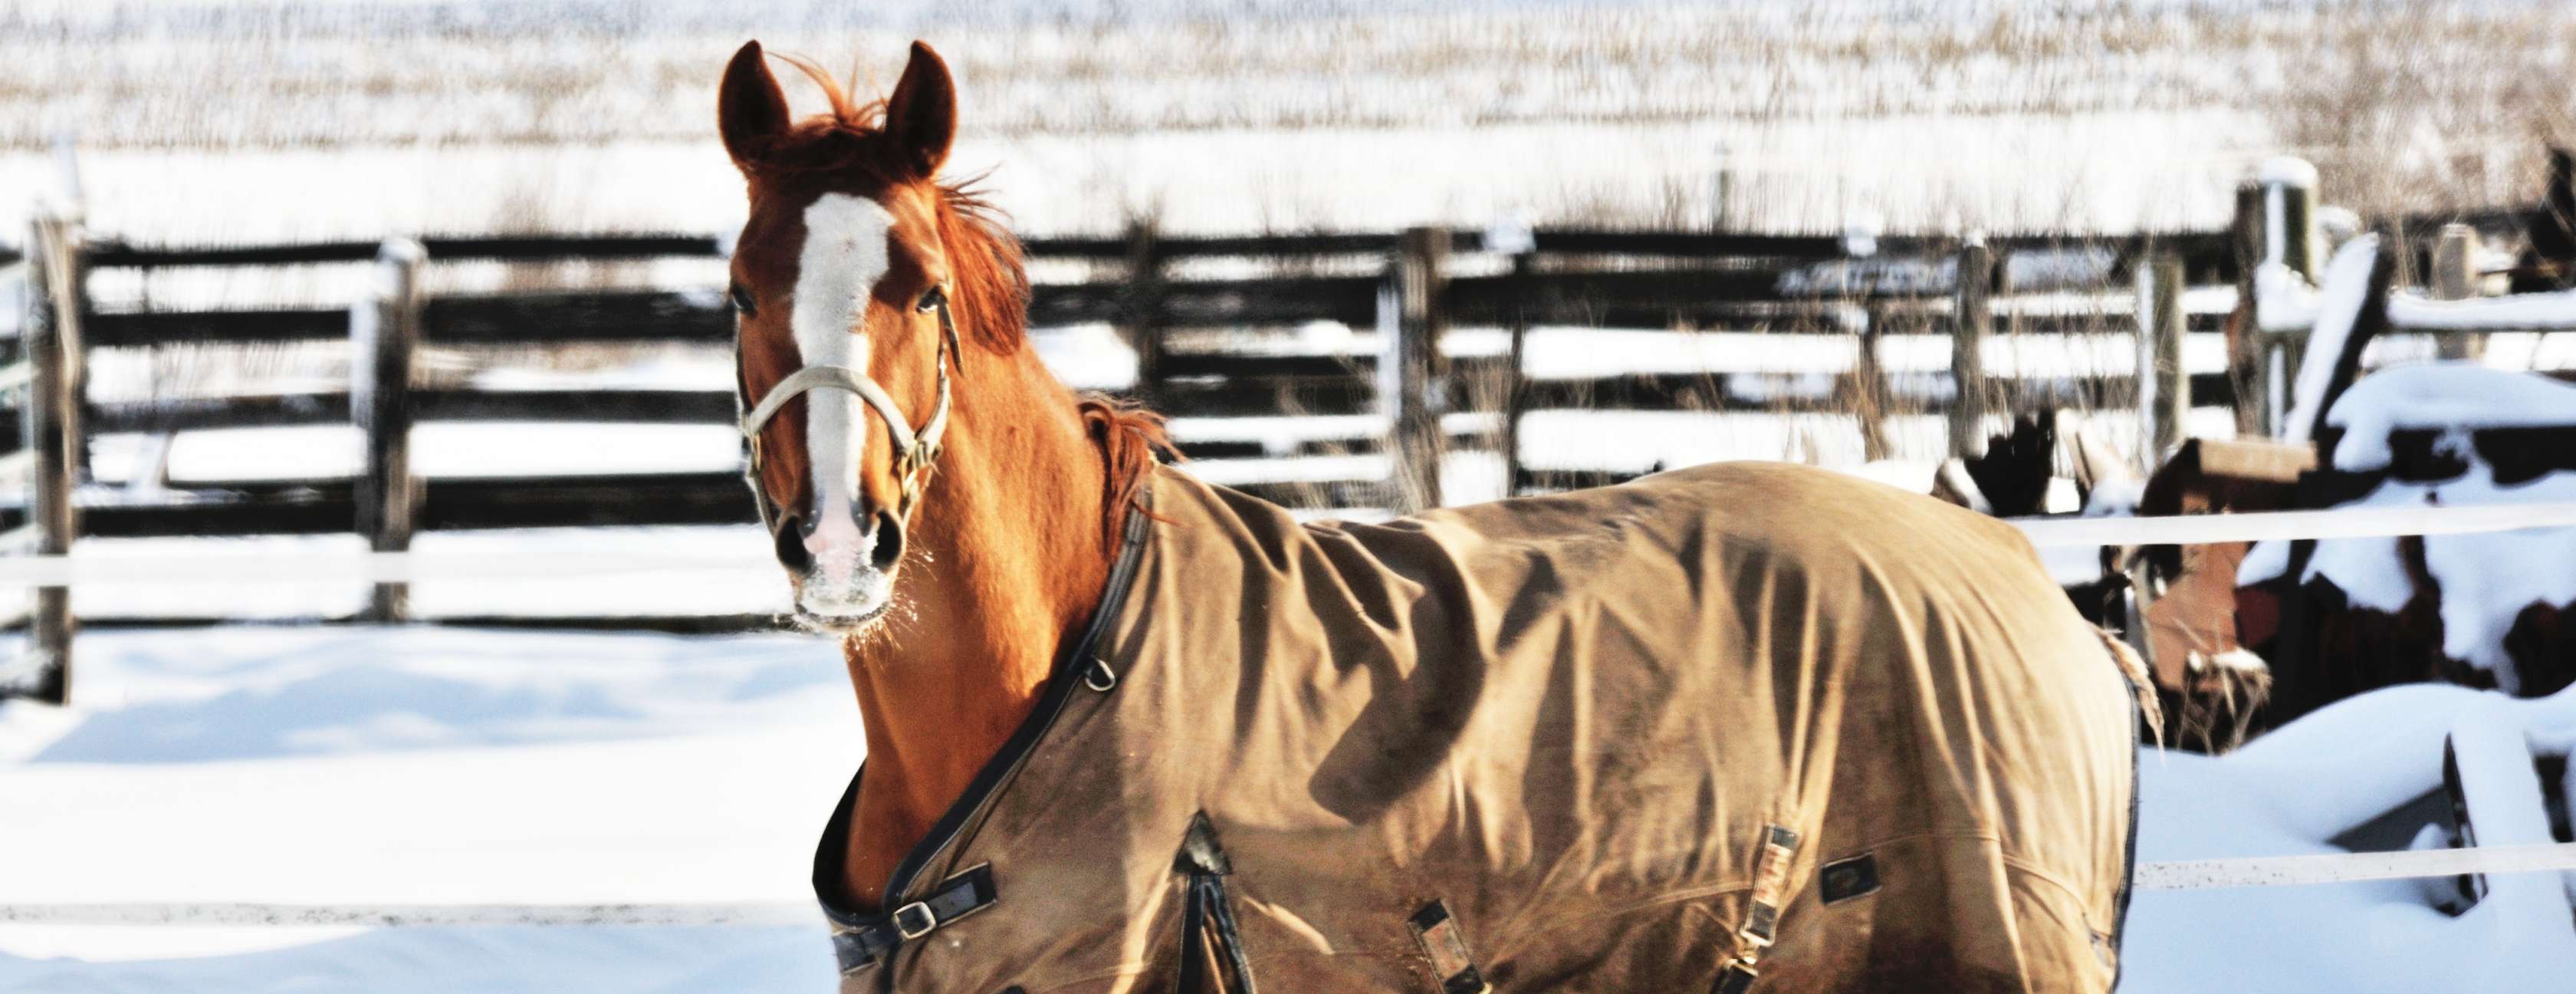 Allianz - Professionelles Scheren von Pferden: Eingedecktes Pferd steht in Winterlandschaft